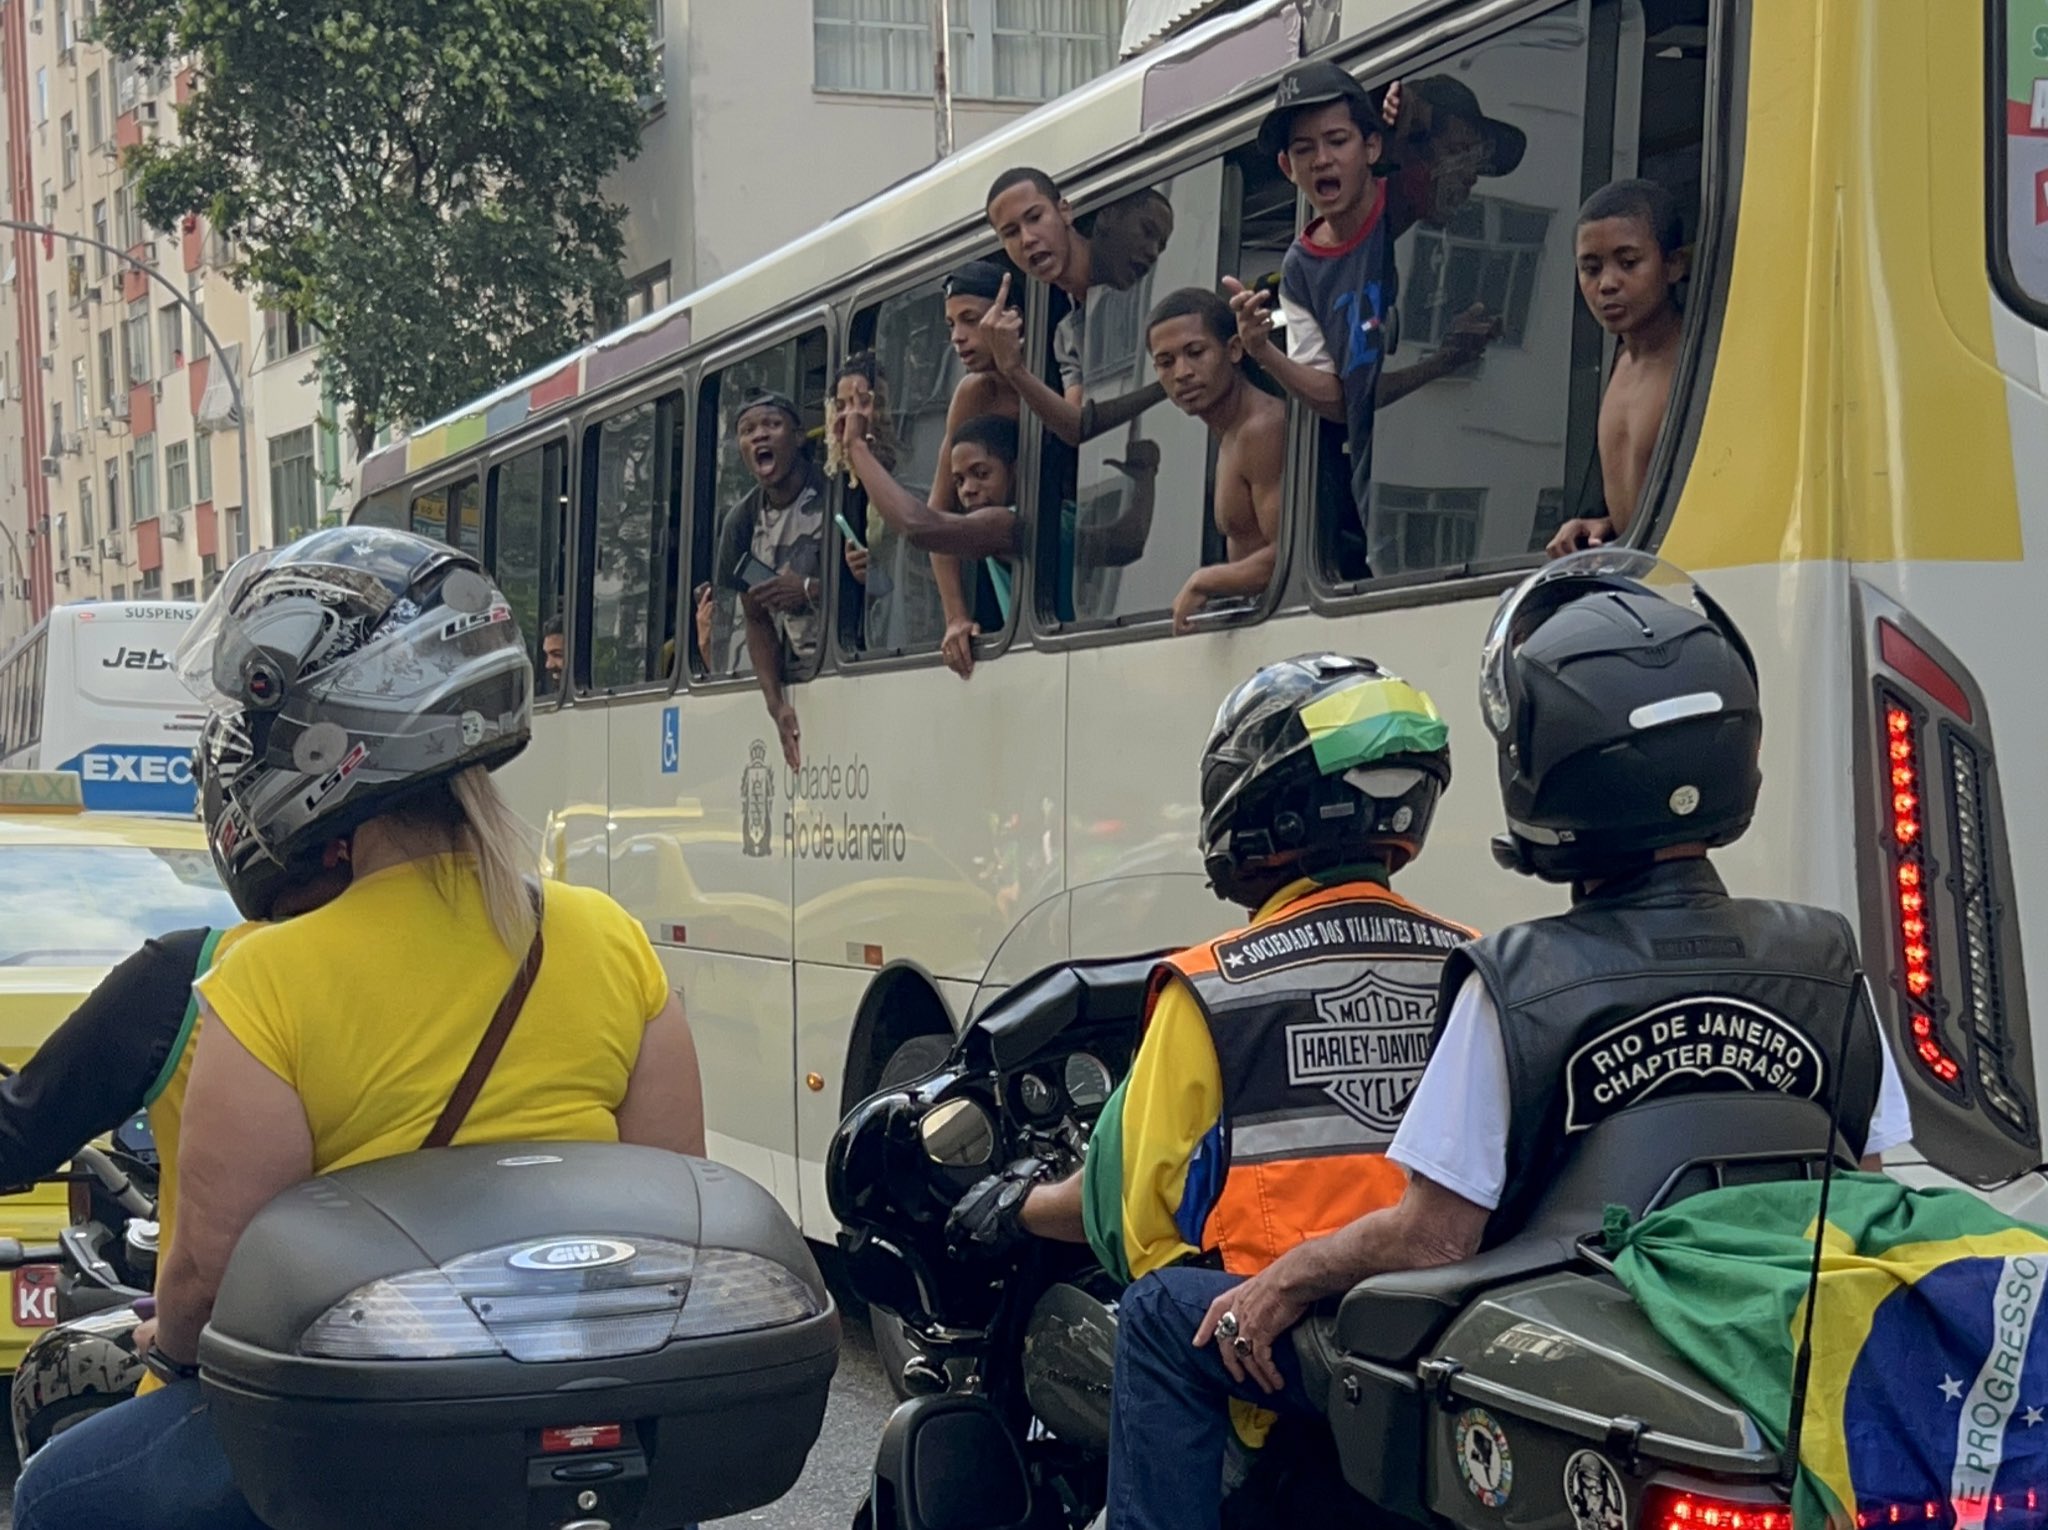 Passageiros de ônibus vaiam apoiadores do presidente Jair Bolsonaro, em Copacabana (Lola Ferreira / UOL - Foto especialmente cedida para a coluna)